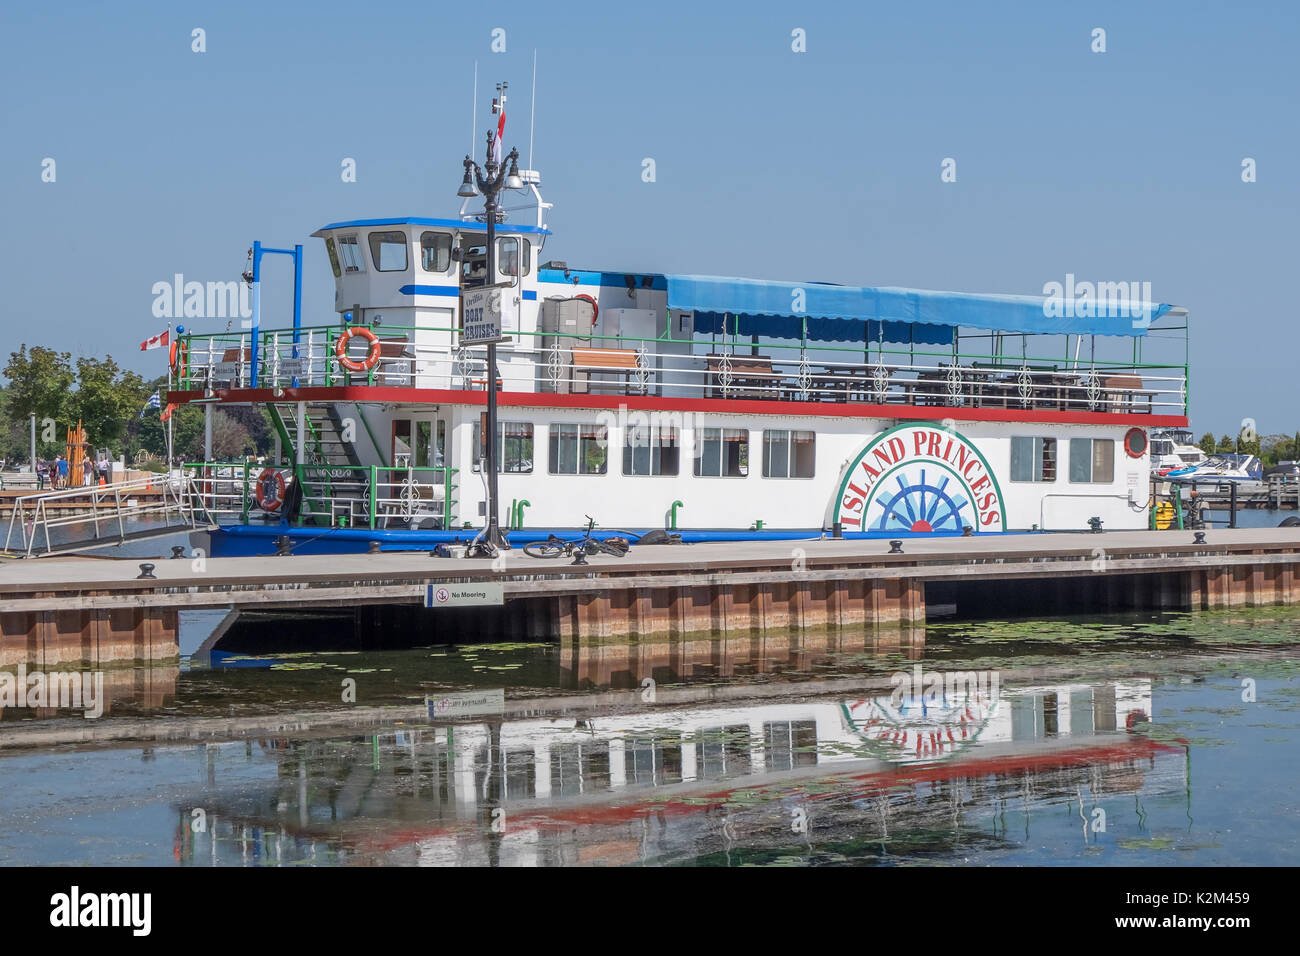 Die Island Princess eine Tour Boot täglich für Touren aus dem Hafen von Orillia Ontario Kanada fährt. Stockfoto